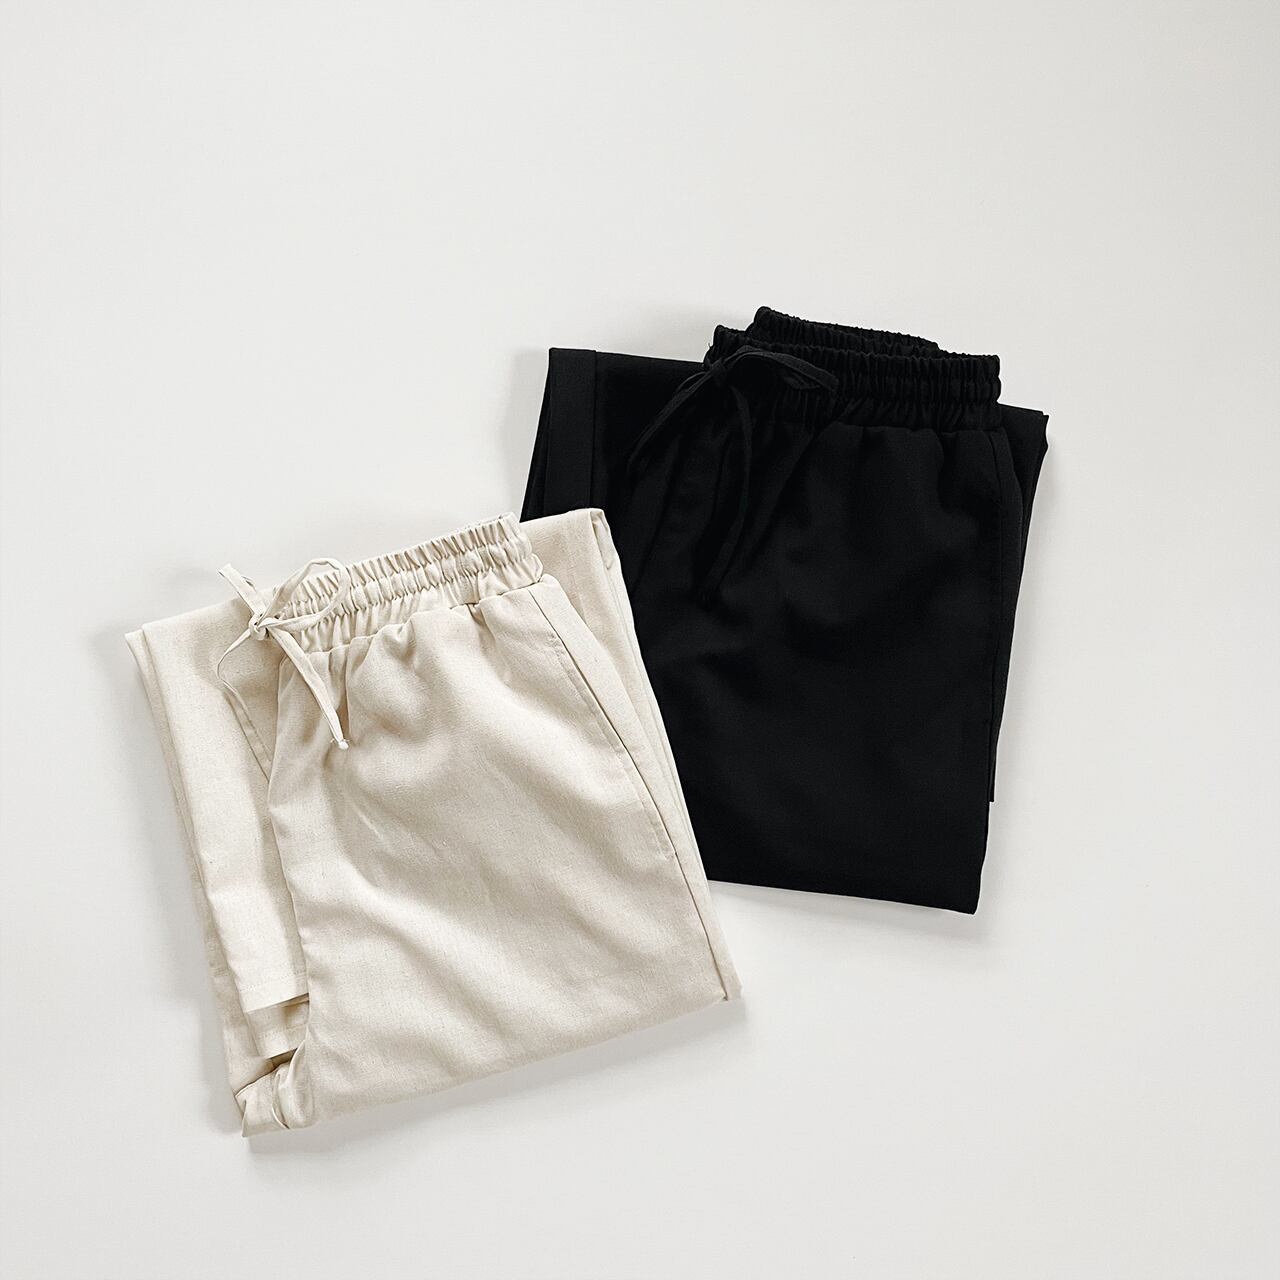 Linen wide pants (black)